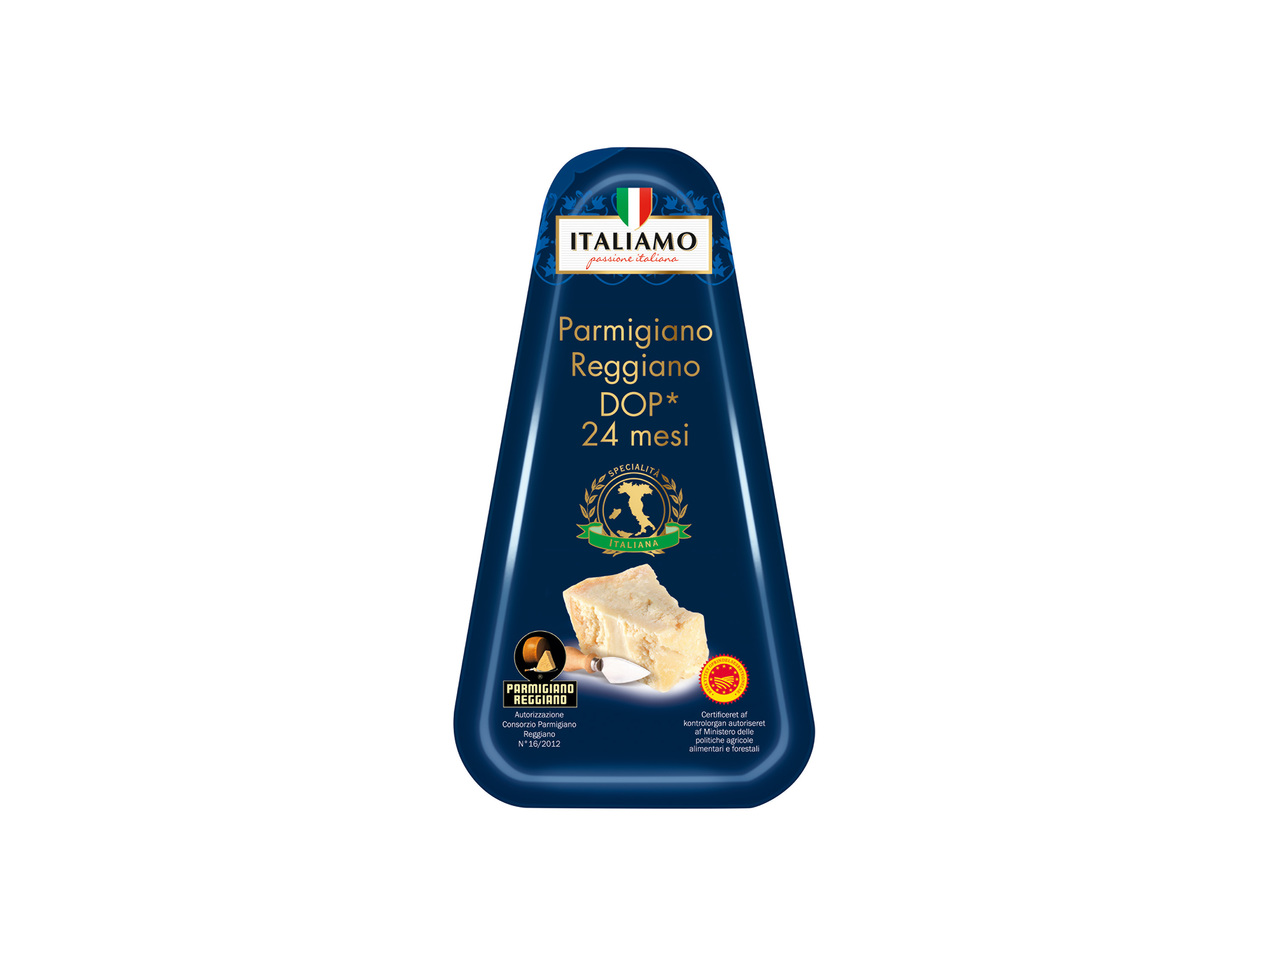 ITALIAMO(R) Parmigiano Reggiano DOP